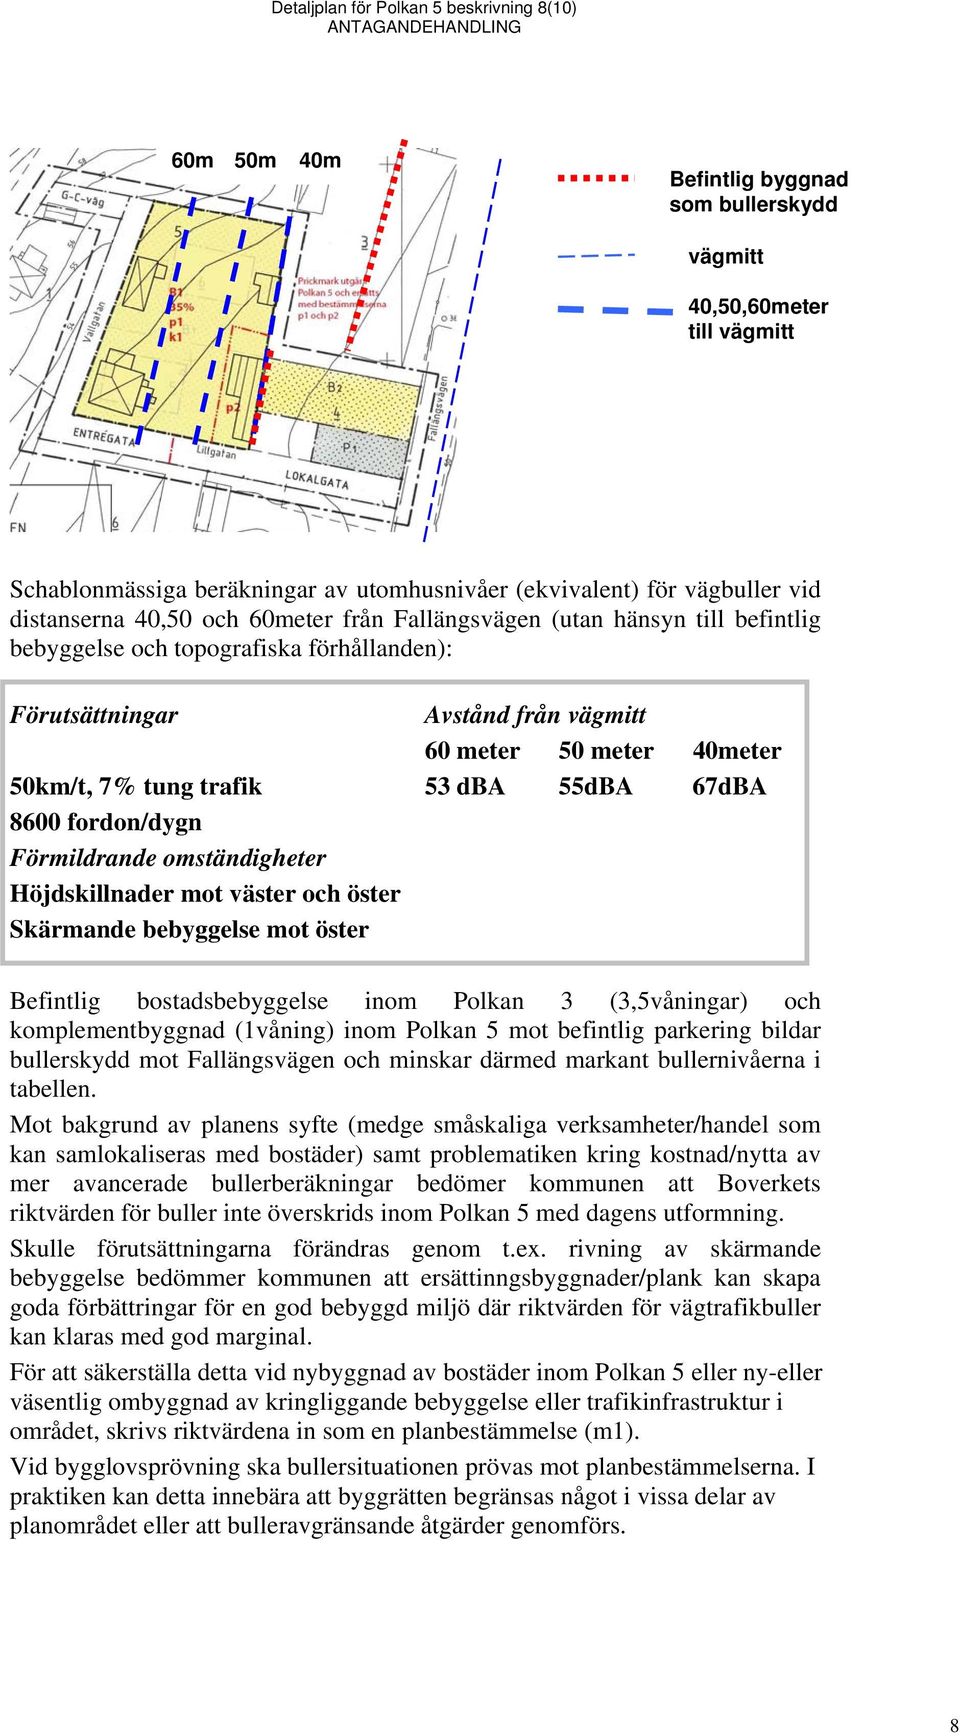 trafik 53 dba 55dBA 67dBA 8600 fordon/dygn Förmildrande omständigheter Höjdskillnader mot väster och öster Skärmande bebyggelse mot öster Befintlig bostadsbebyggelse inom Polkan 3 (3,5våningar) och